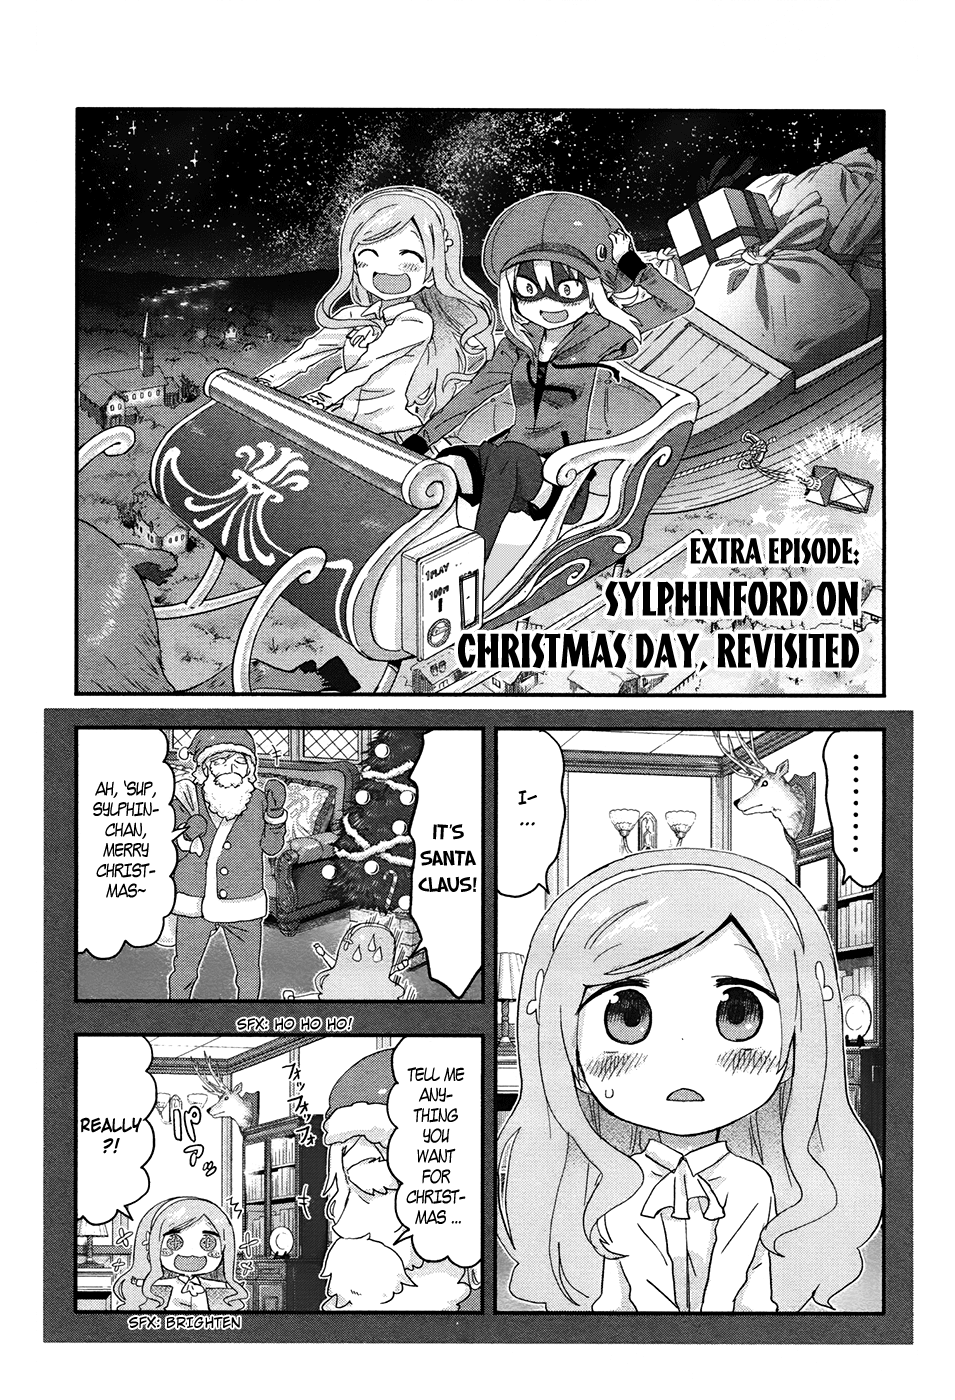 Himouto! Umaru-Chan - Page 1